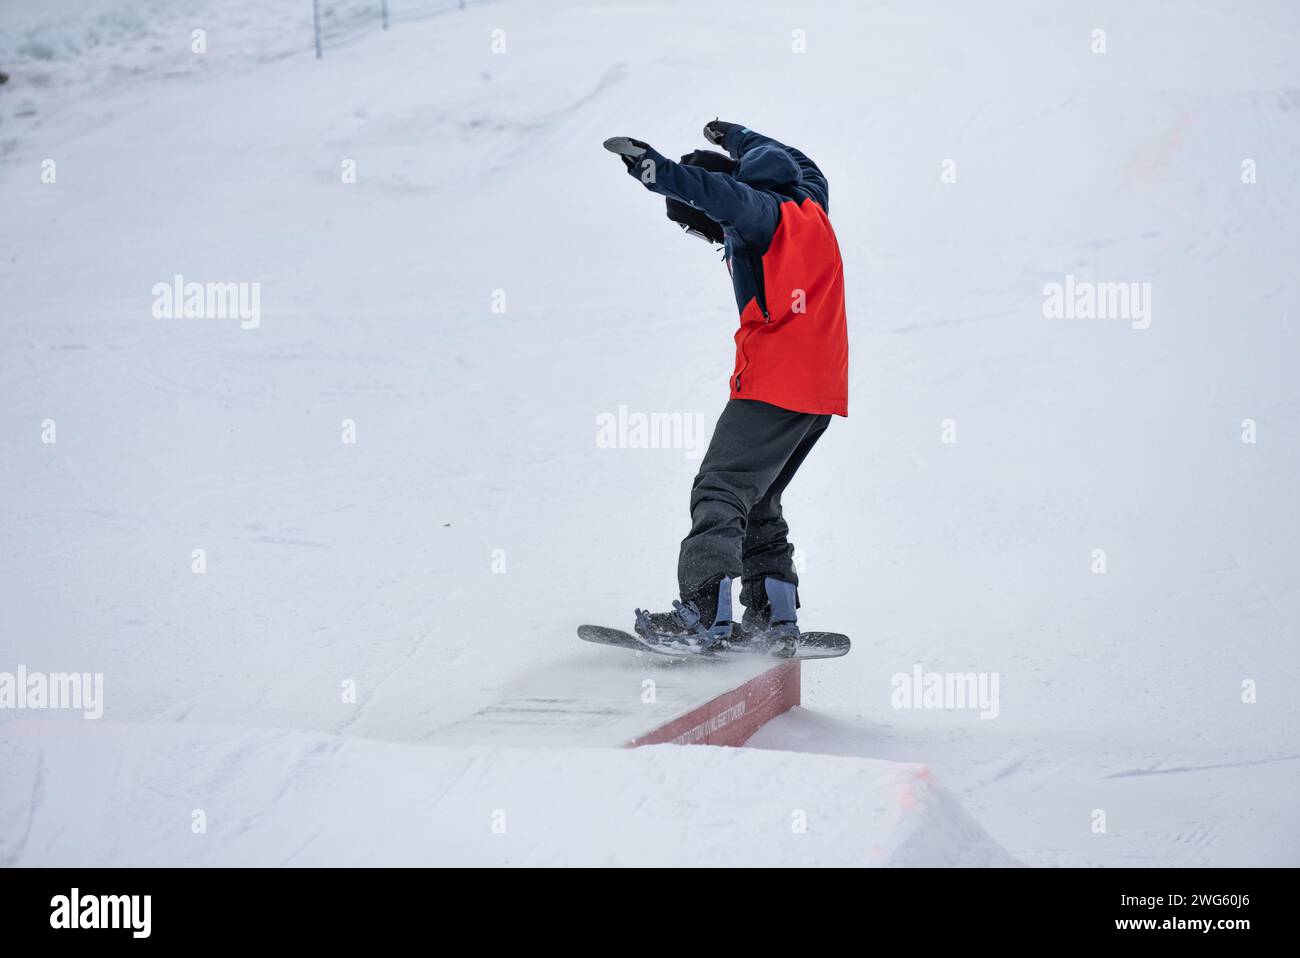 Trucchi per la scatola dello Snow Park. Snowboarder nel parco su una scatola. Jibbing invernale in snwopark nelle dolomiti. Foto Stock